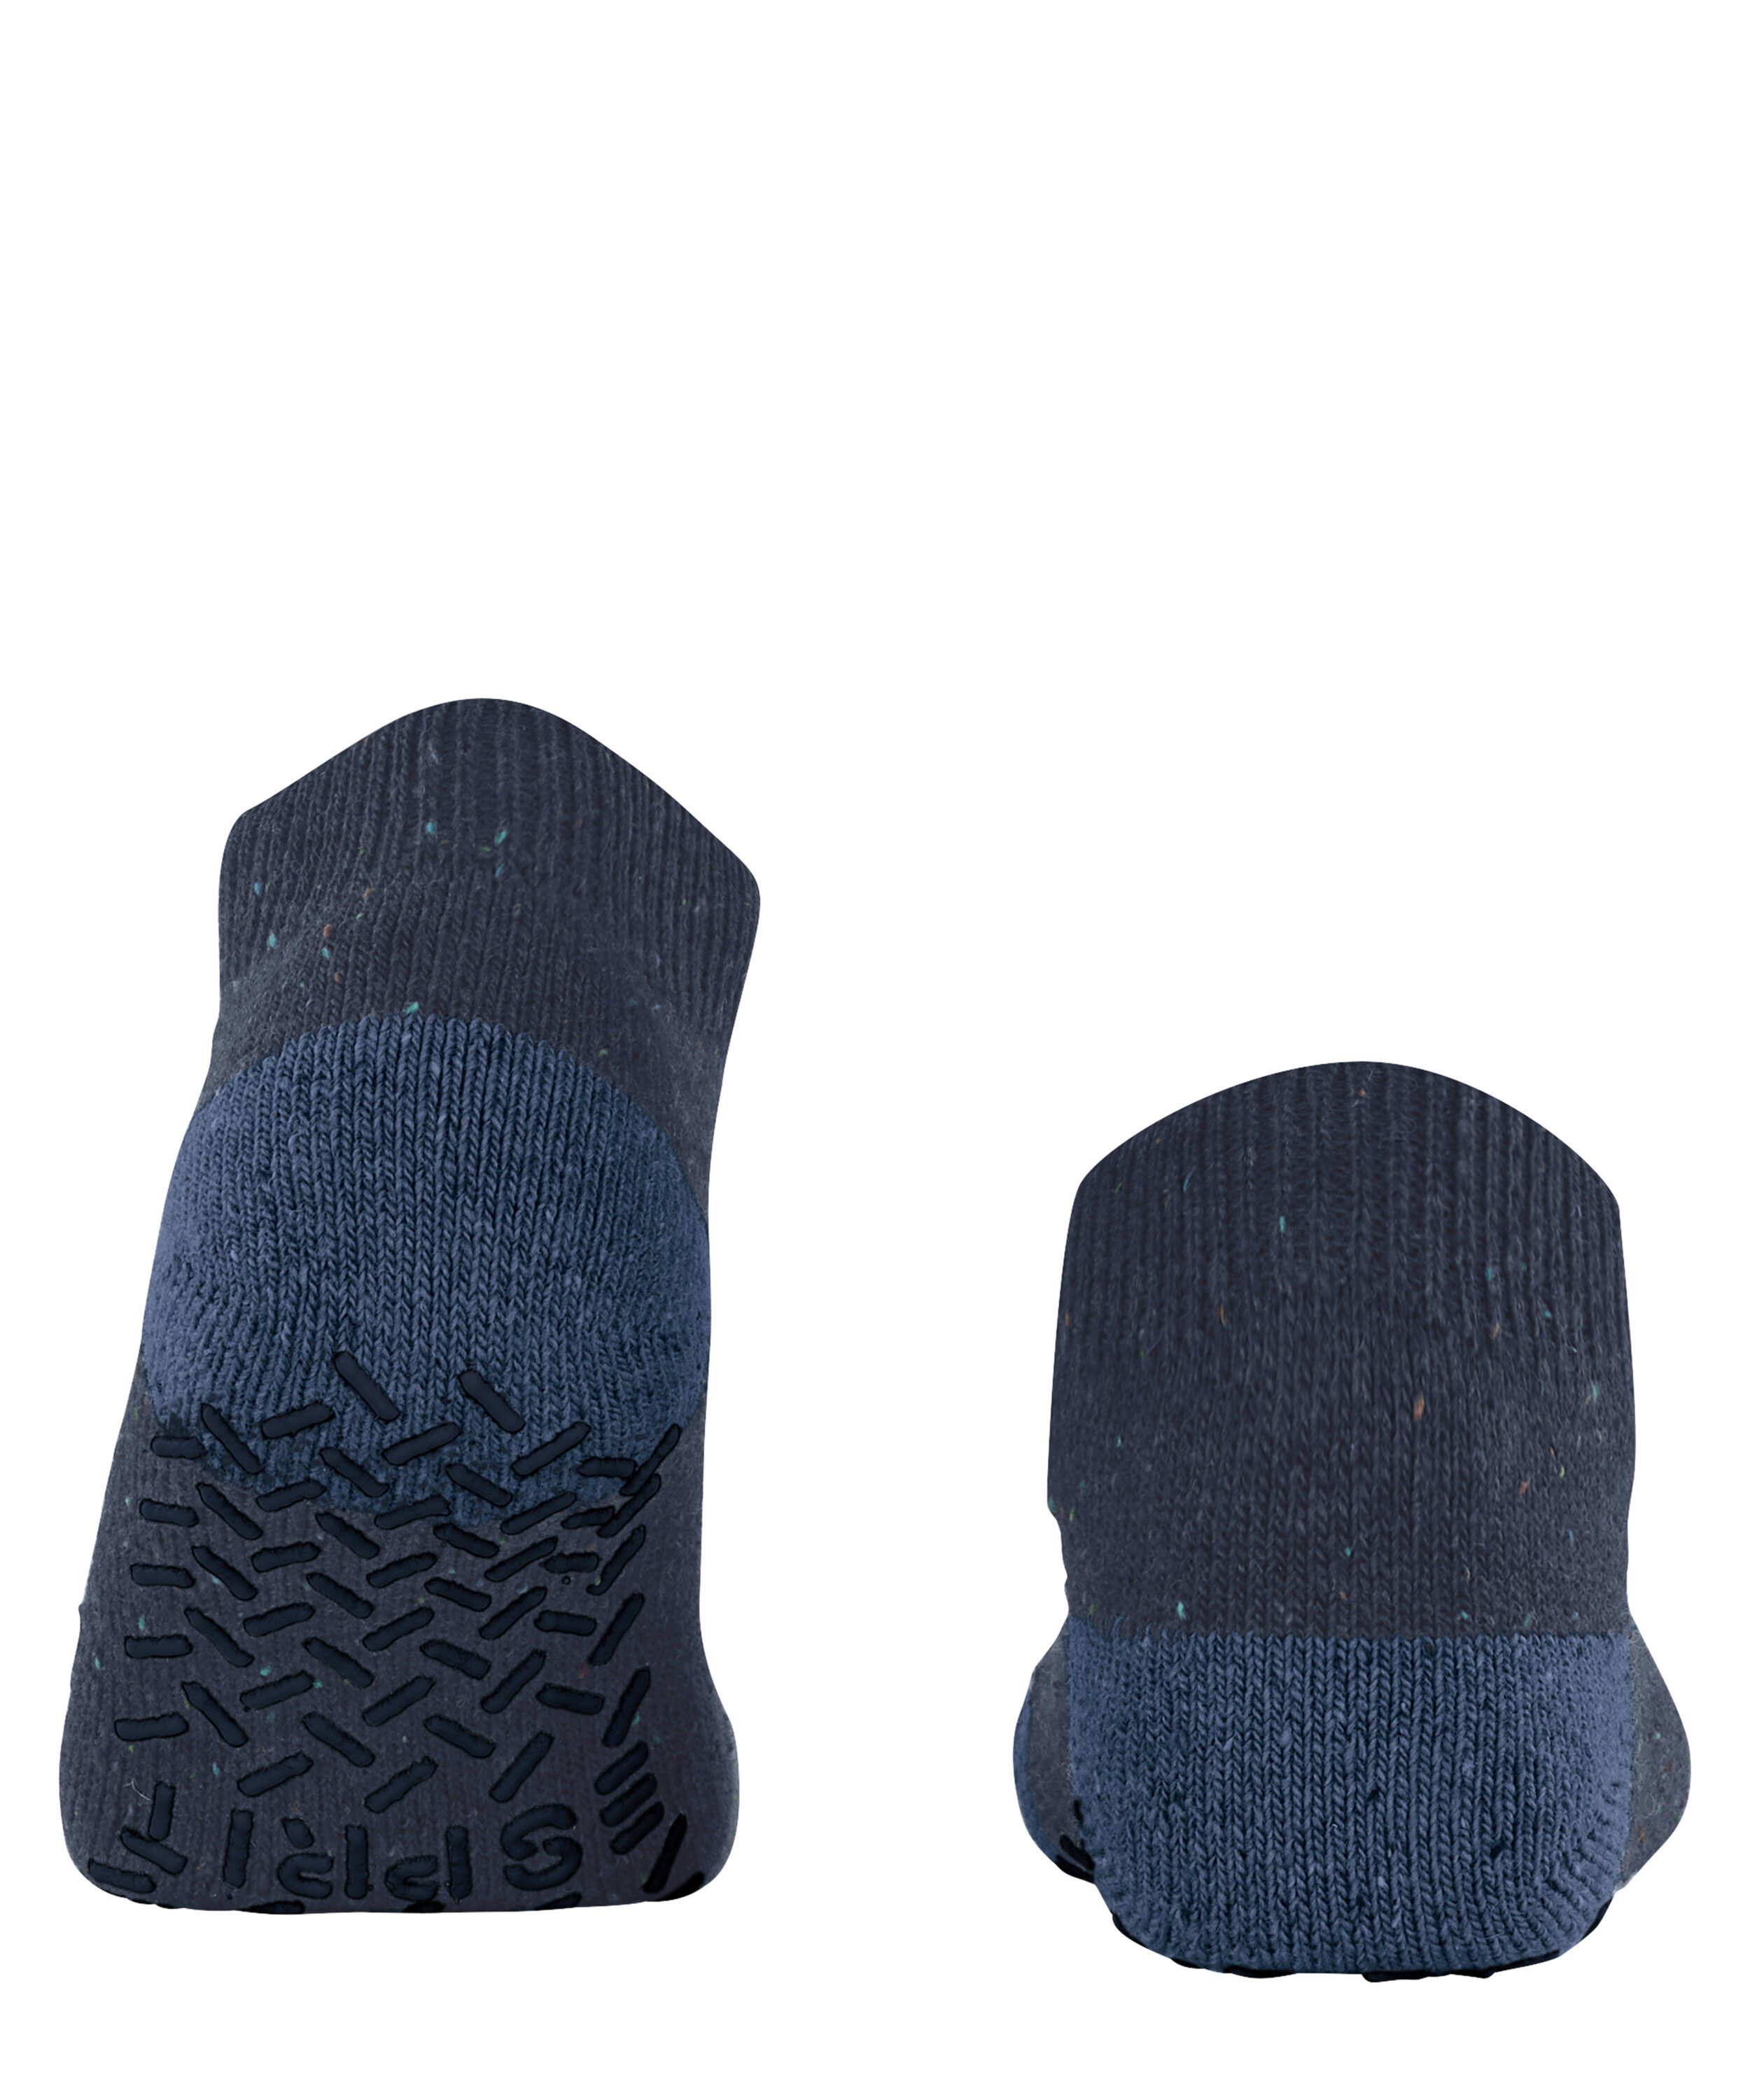 (1-Paar) Socken (6120) Esprit Effect marine